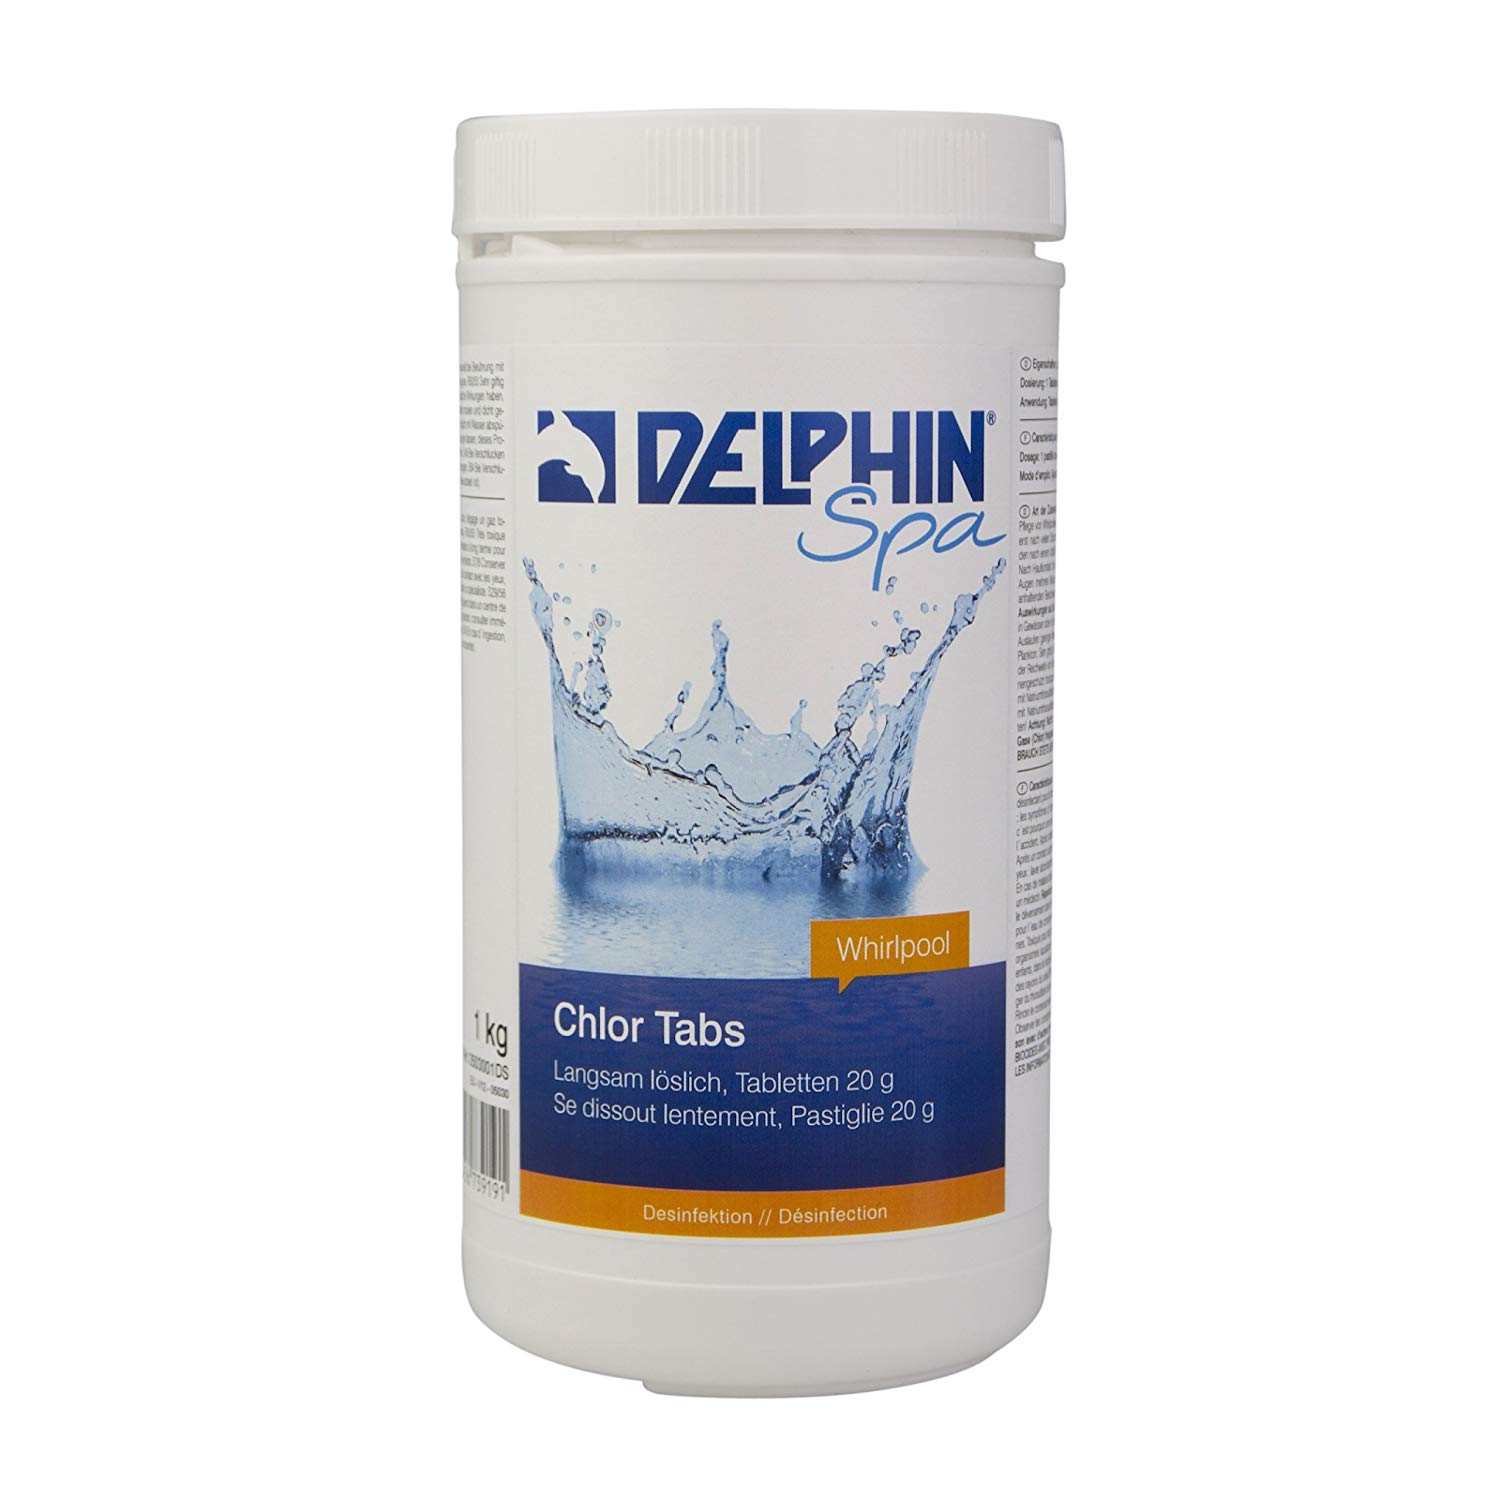 Delphin Spa Chlortabs langsamlöslich 20g 1 kg